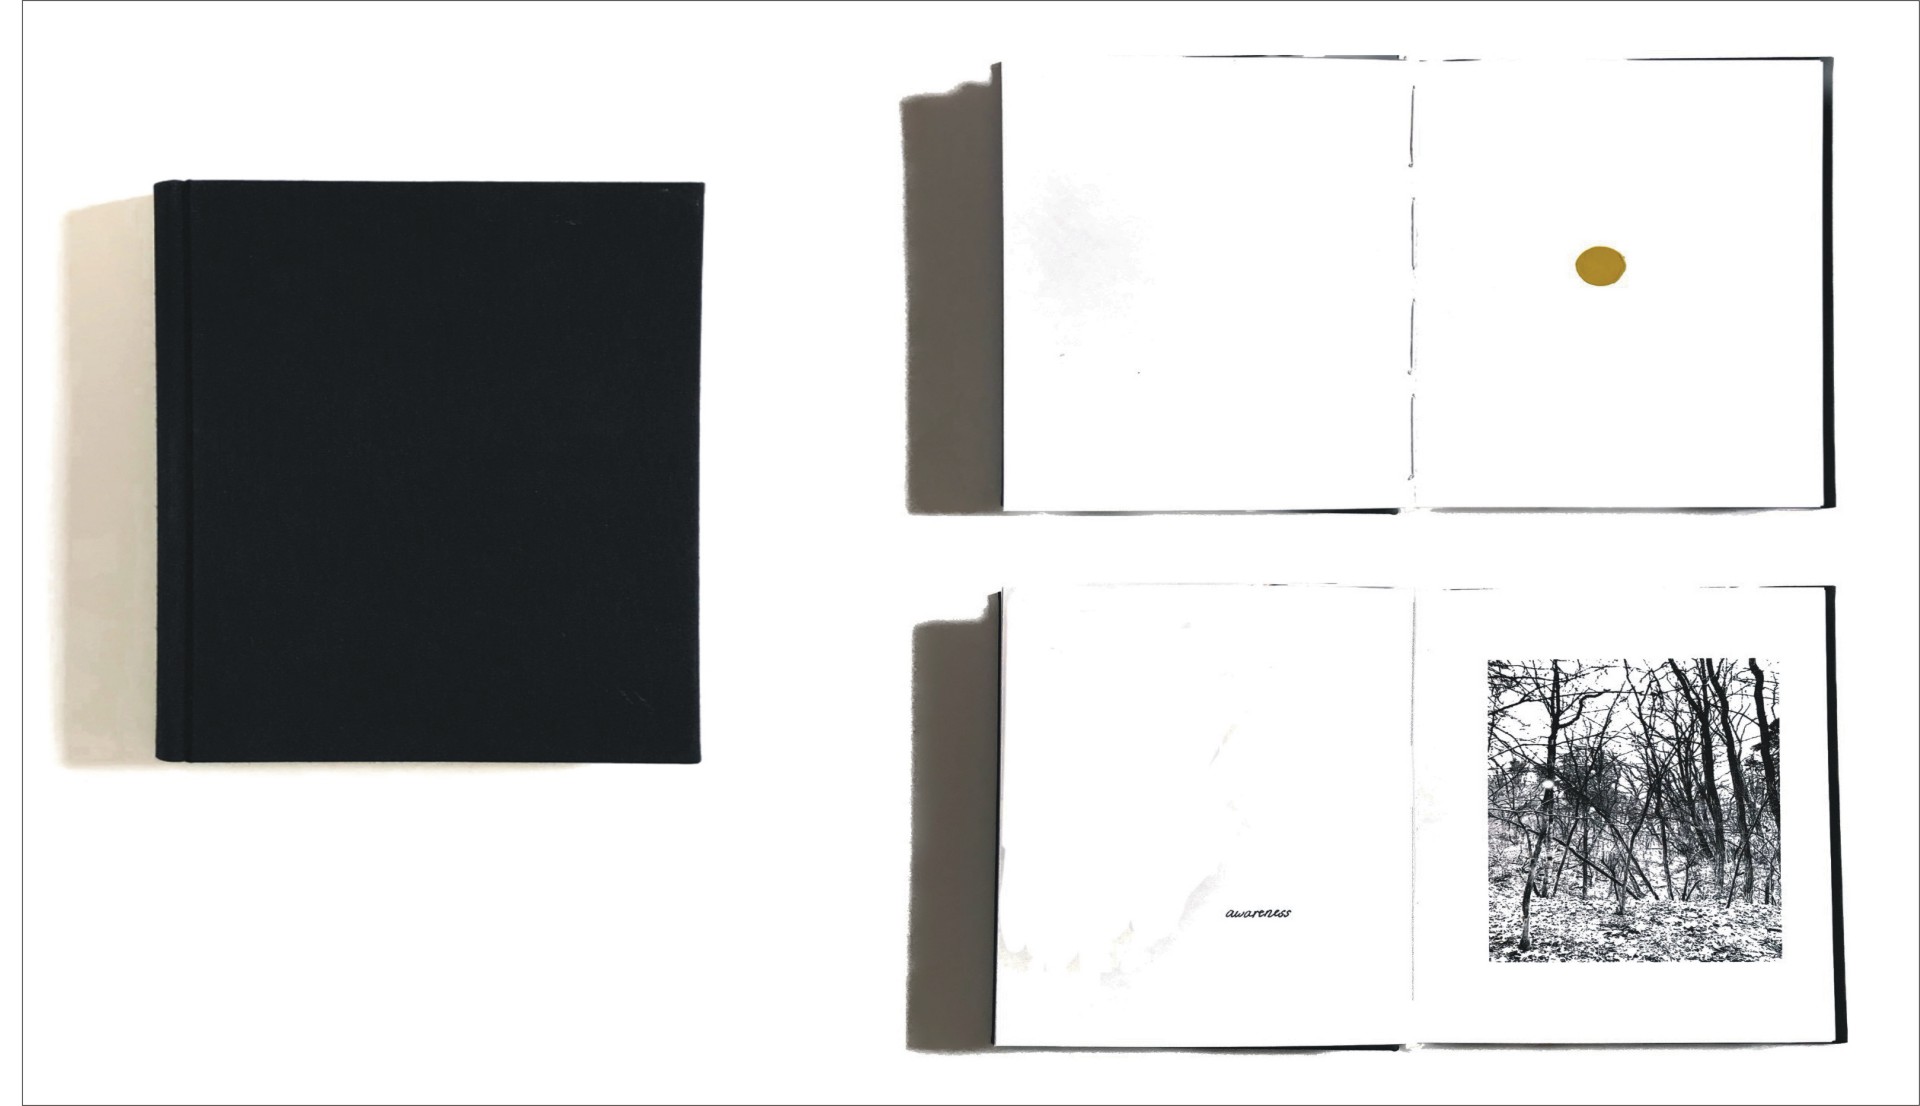 Unikatowa książka artystyczne, okładka twarda, czarna, płócienna, strony – wydruki czarnobiałe, motywy lasu, słowa w j. angielskim na białych stronach, białe strony z ręcznie wykonanymi kolorowymi znakami graficznymi  